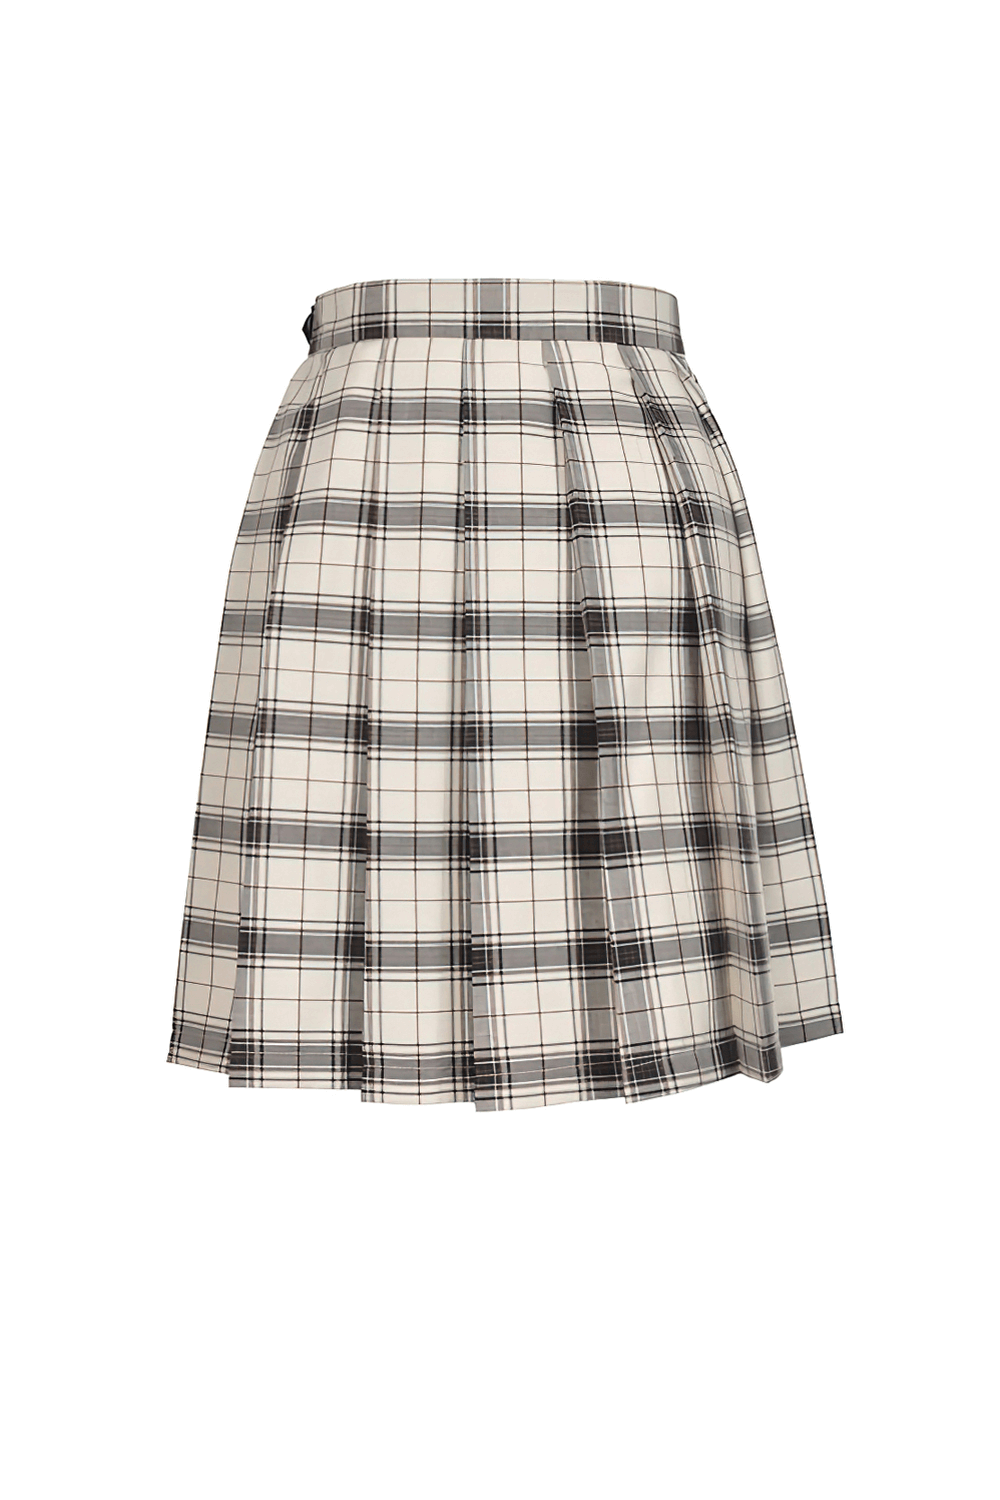 Edgy Plaid Asymmetrical Skirt with Bold Buckles